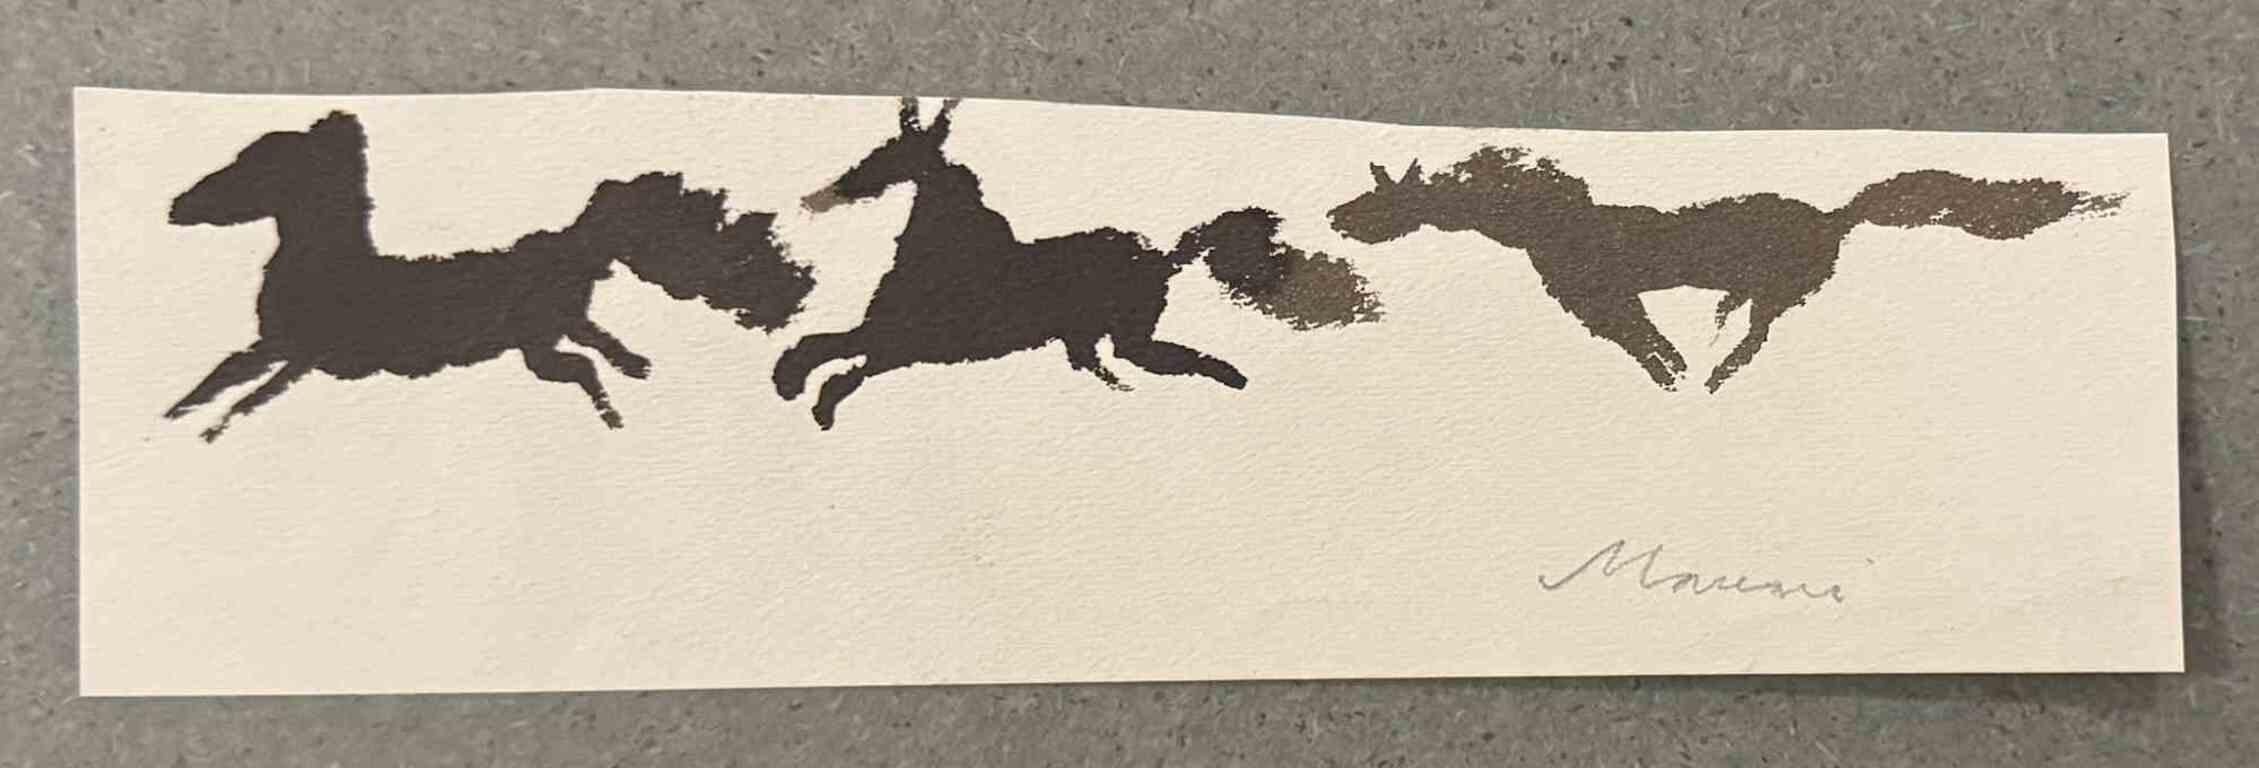 Pferde ist eine Aquarellzeichnung von Mino Maccari (1924-1989) aus der Mitte des 20. Jahrhunderts.

Handsigniert.

Guter Zustand mit leichten Stockflecken.

Mino Maccari (Siena, 1924-Rom, 16. Juni 1989) war ein italienischer Schriftsteller, Maler,